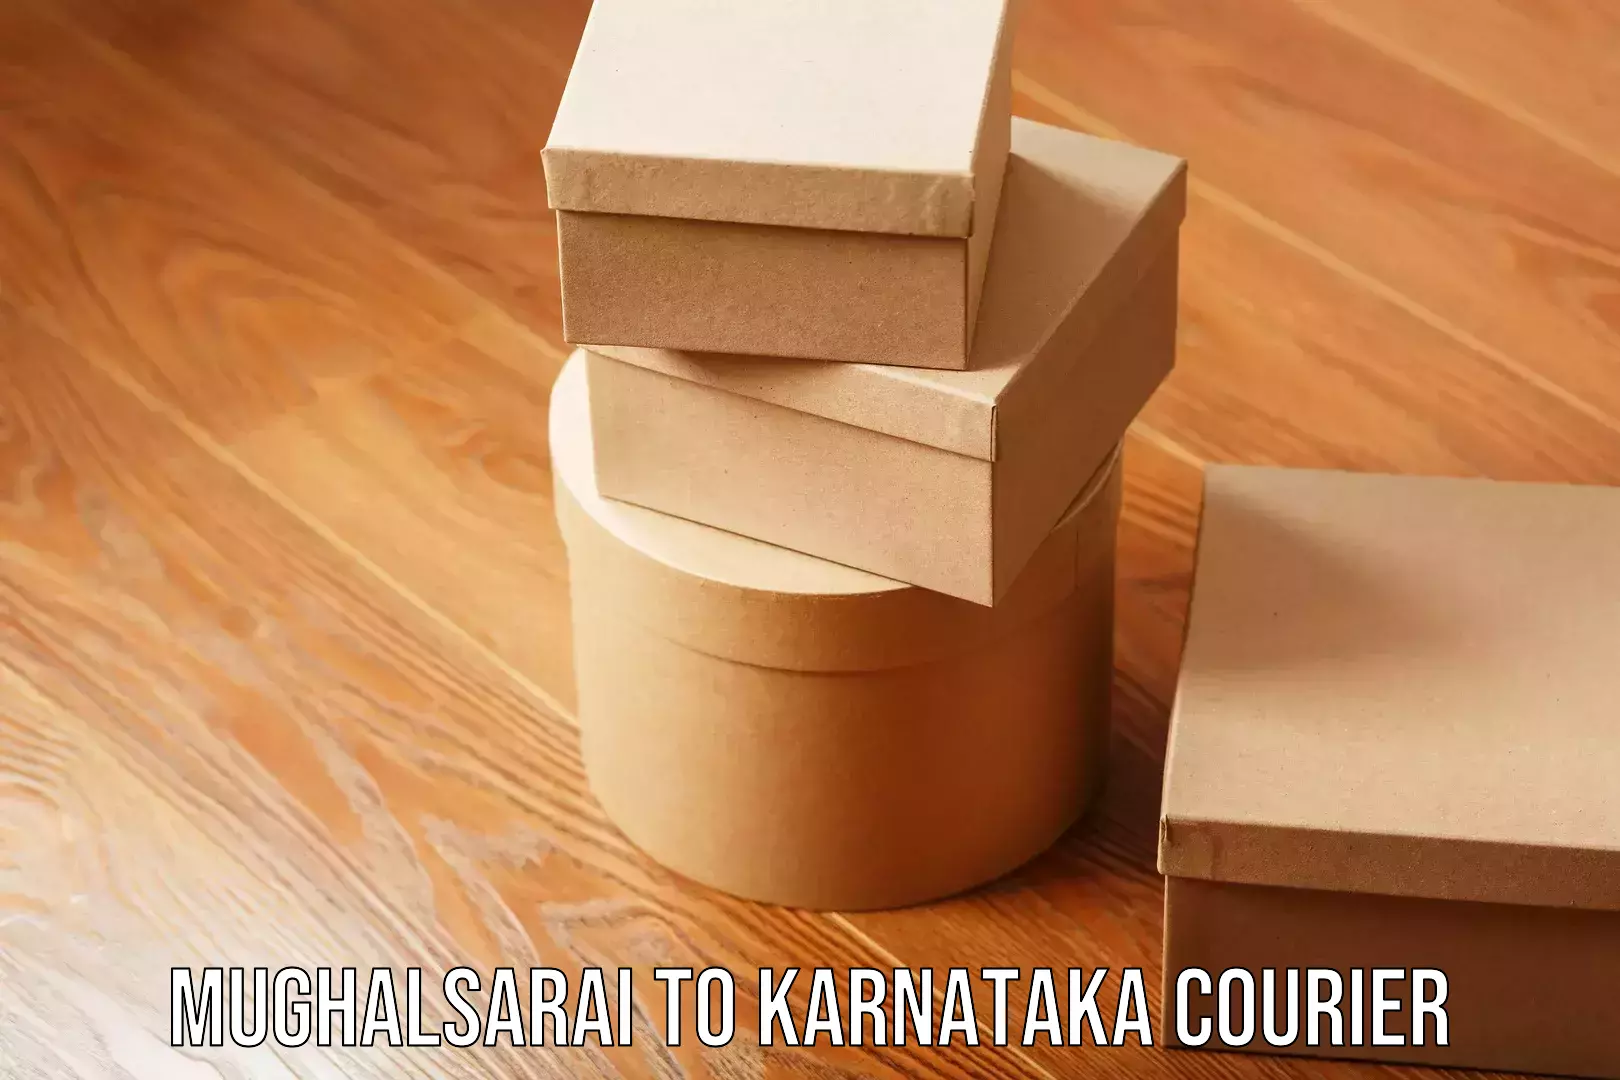 Trusted home movers Mughalsarai to Karnataka